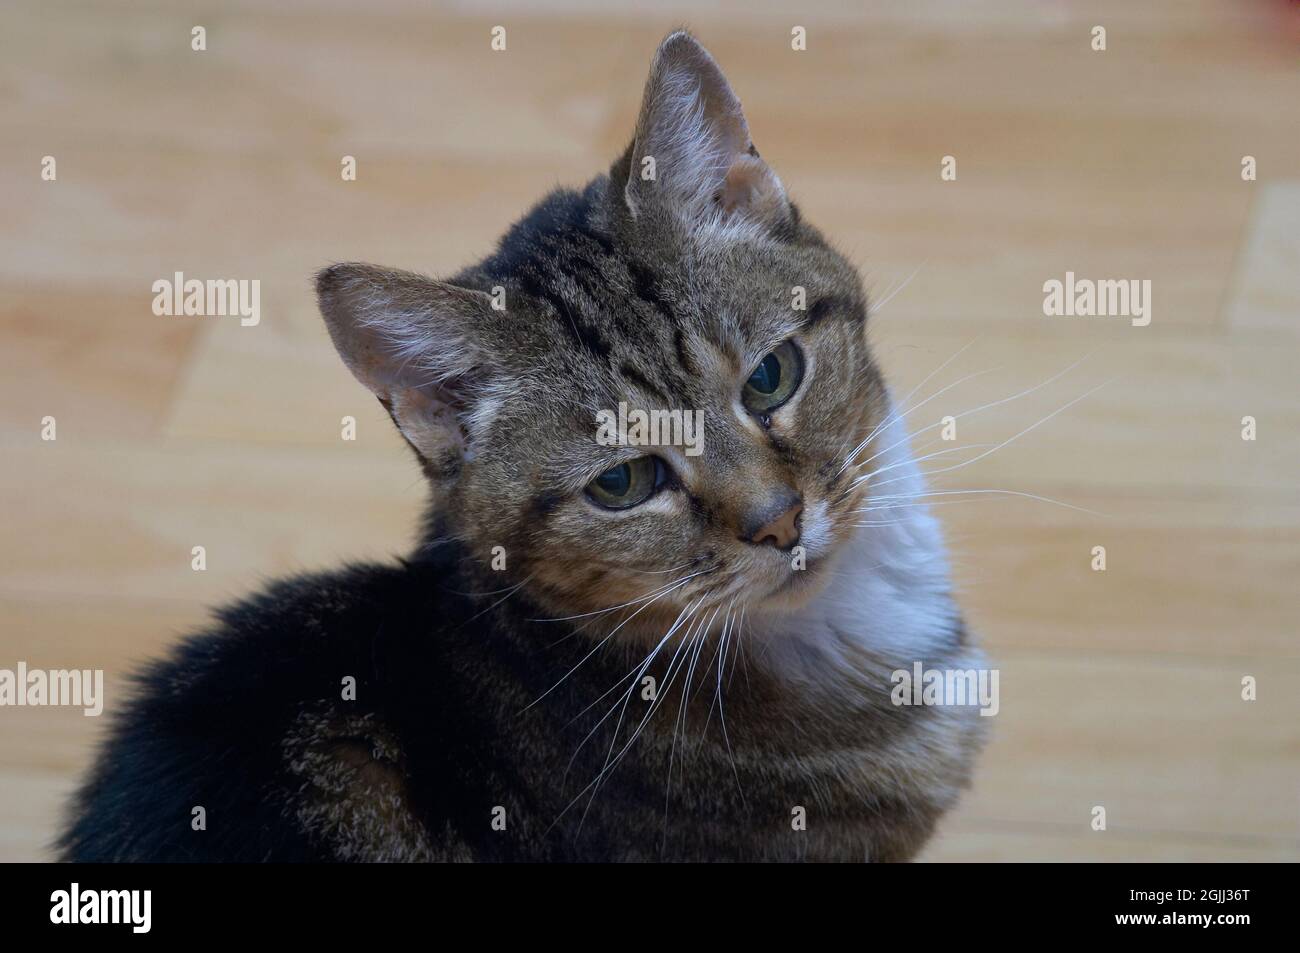 Petite gato Tabby adulto que hace contacto visual con la cámara Foto de stock